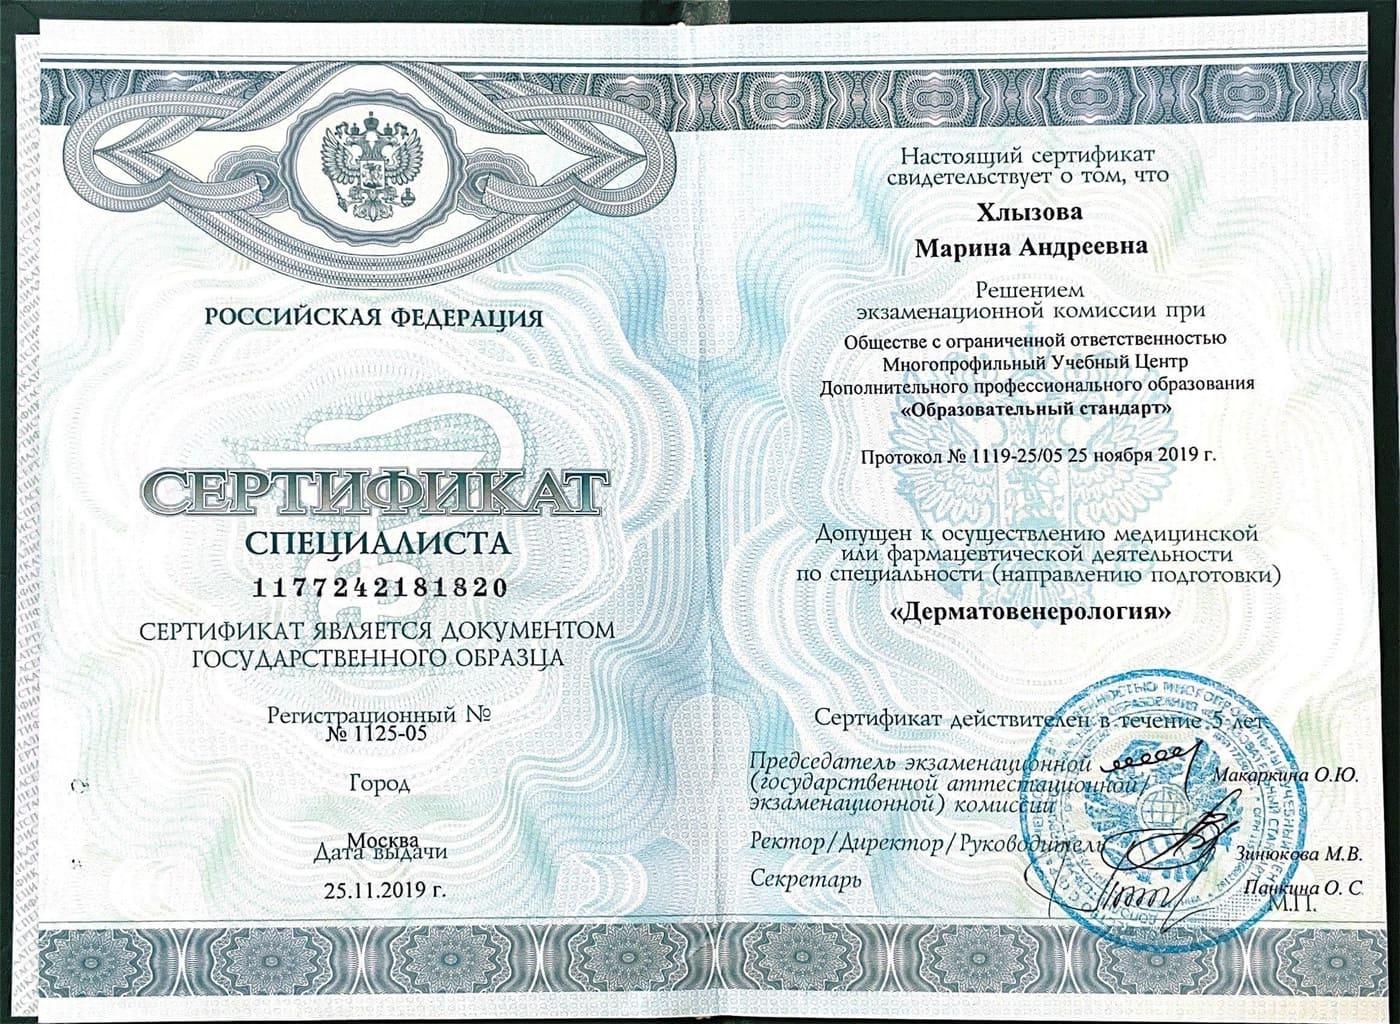 Документ подтверждающий что Марина Андреевна Хлызова получил(а) сертификат профильного образования по специальности дерматовенерология